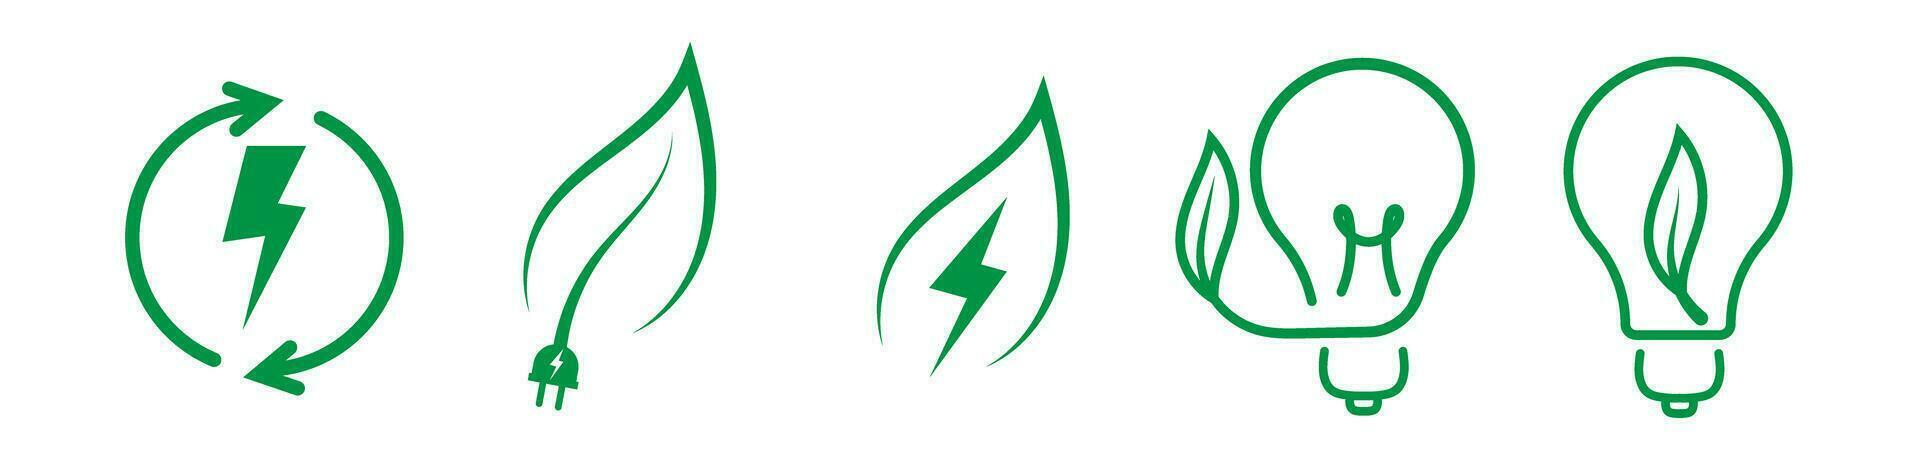 Grün Energie Öko verlängerbar Symbol Logo vektor